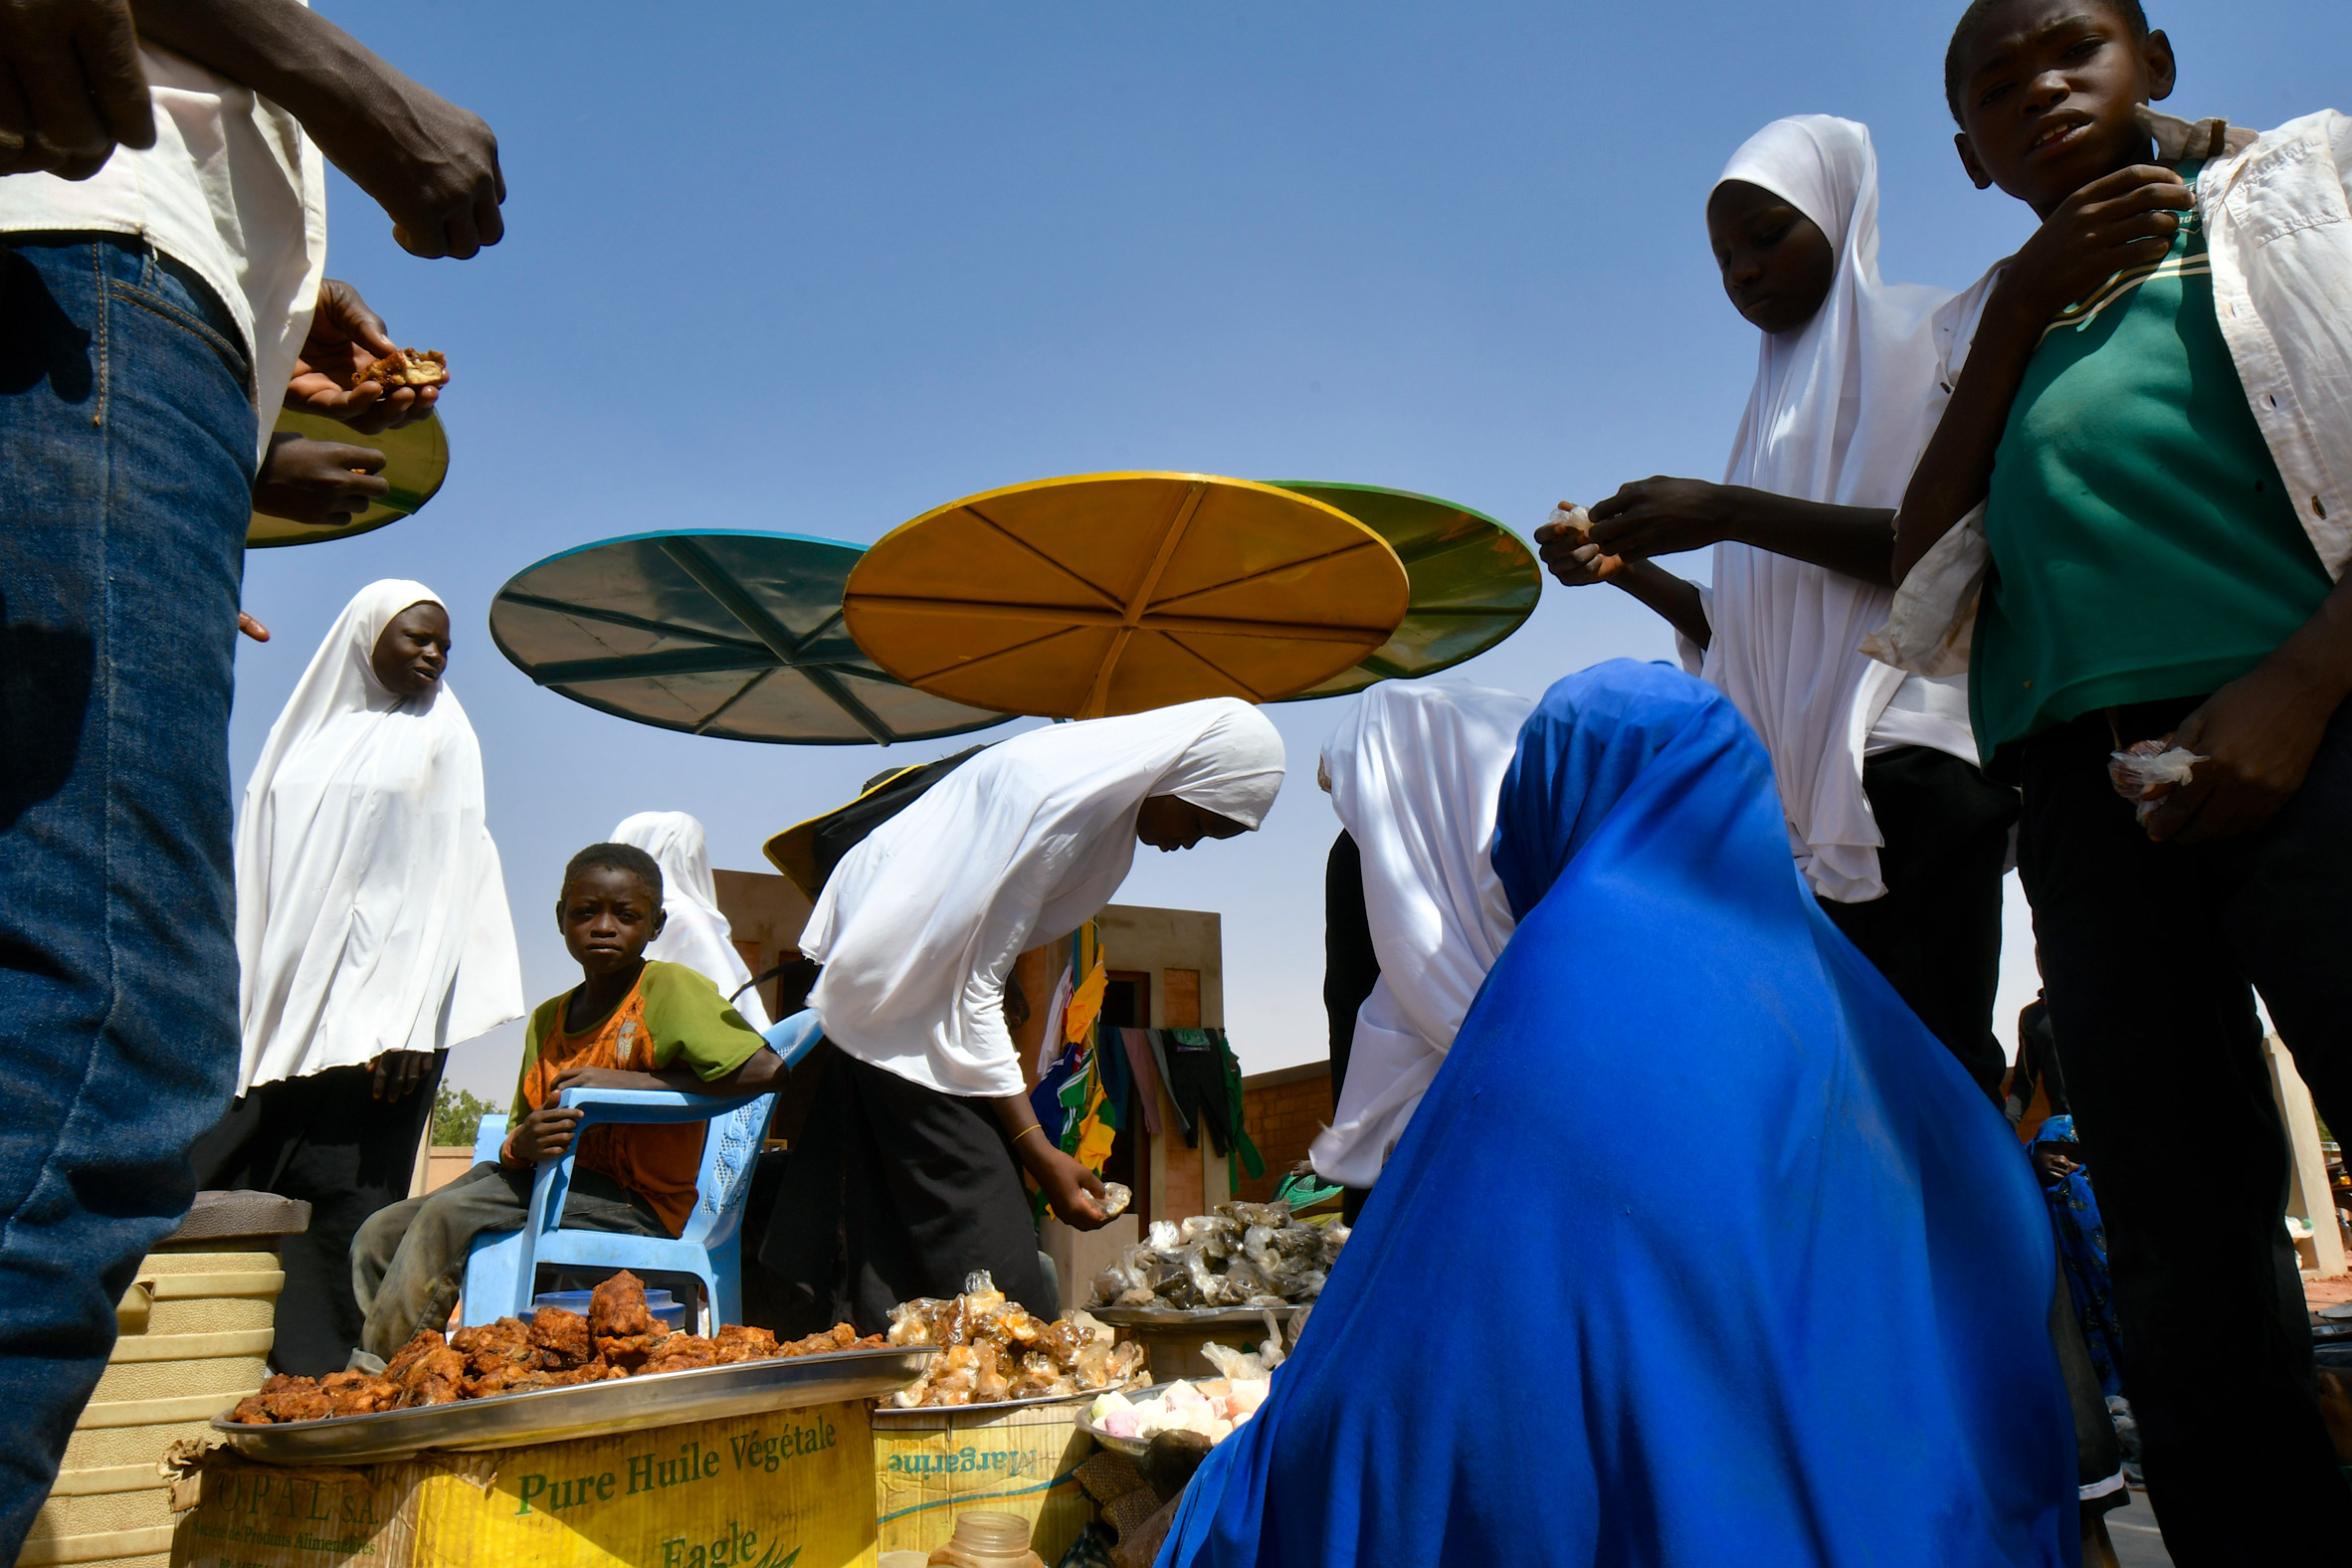 Dandaji market in Niger by Atelier Masomi